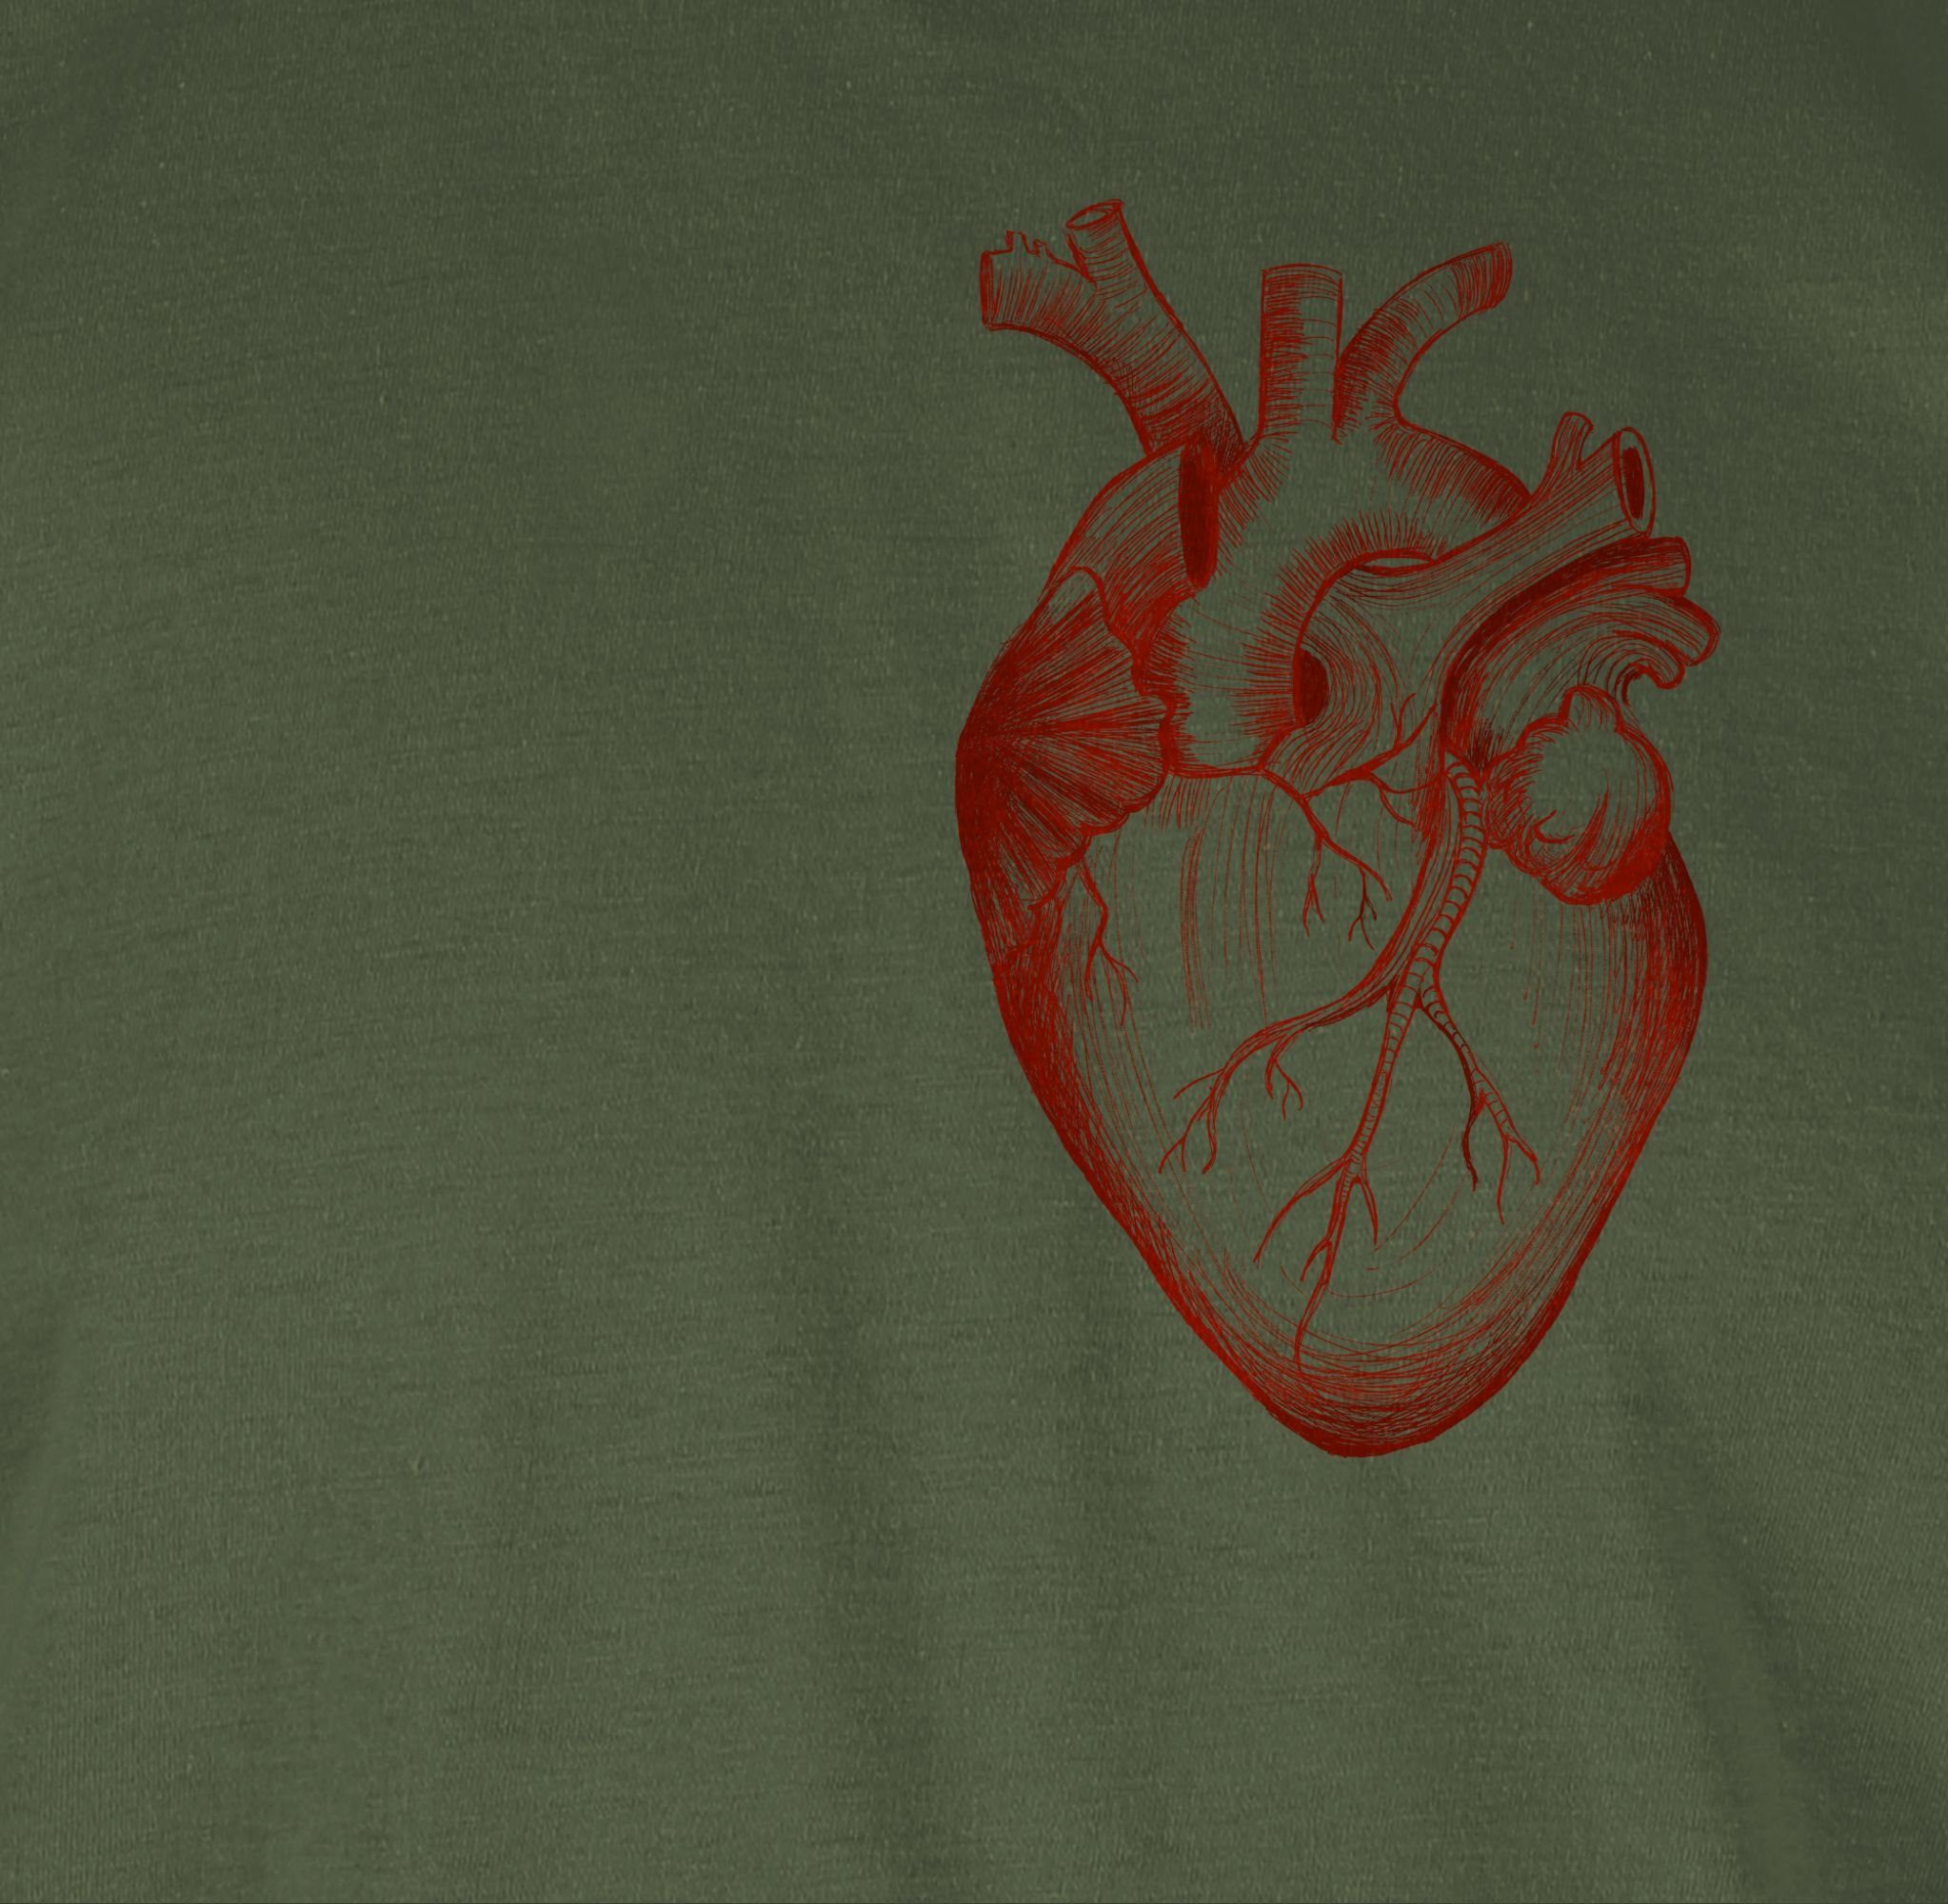 Anatomie Geschenke Army Nerd 03 Shirtracer Herz T-Shirt Grün